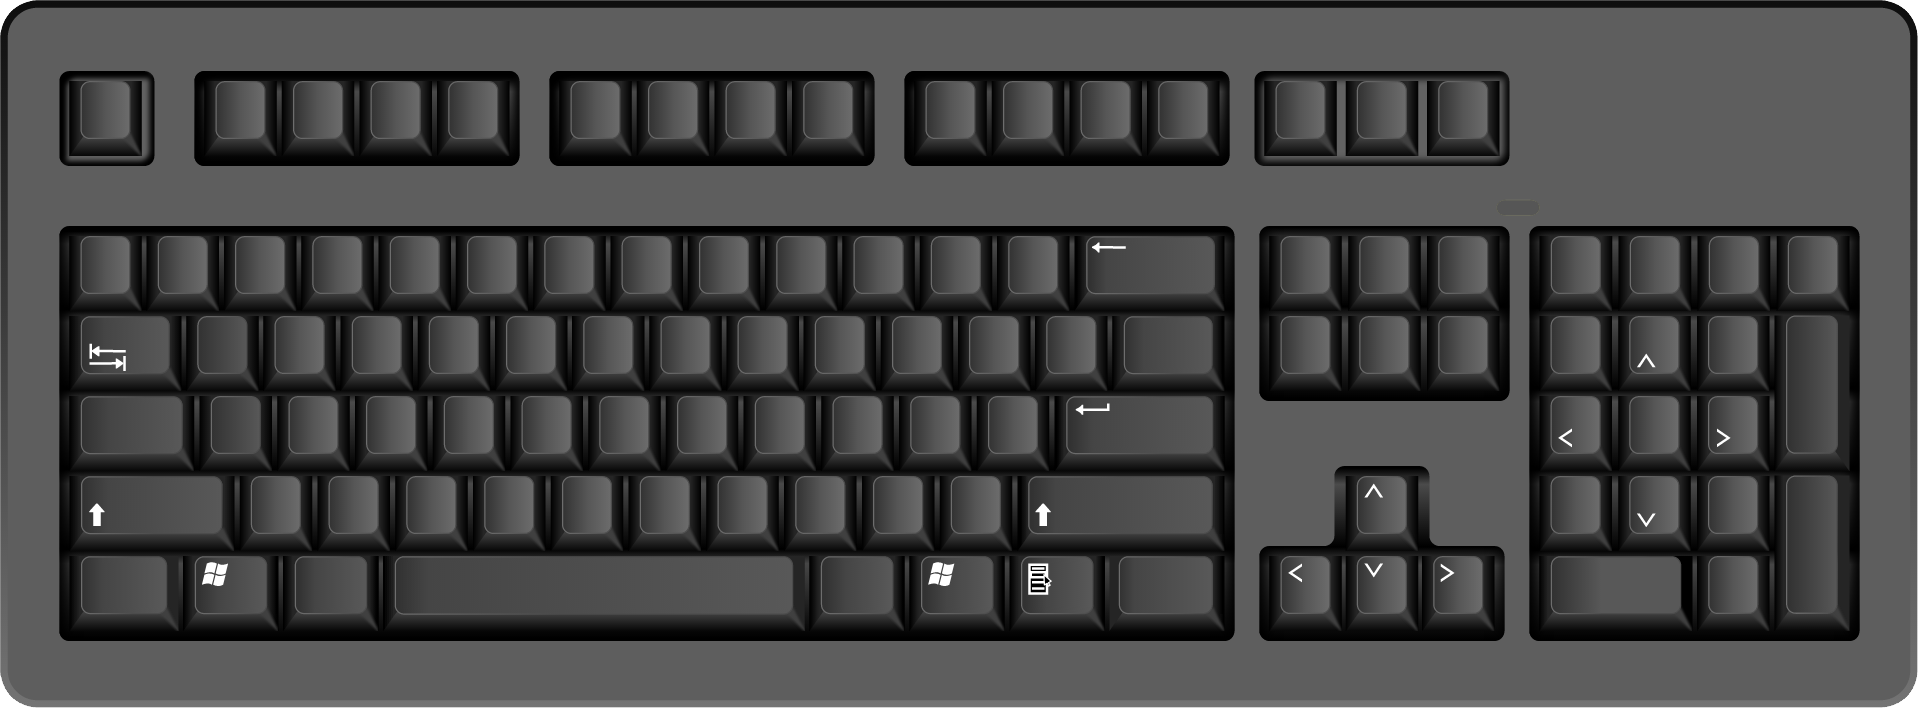 Keyboard komputer hitam